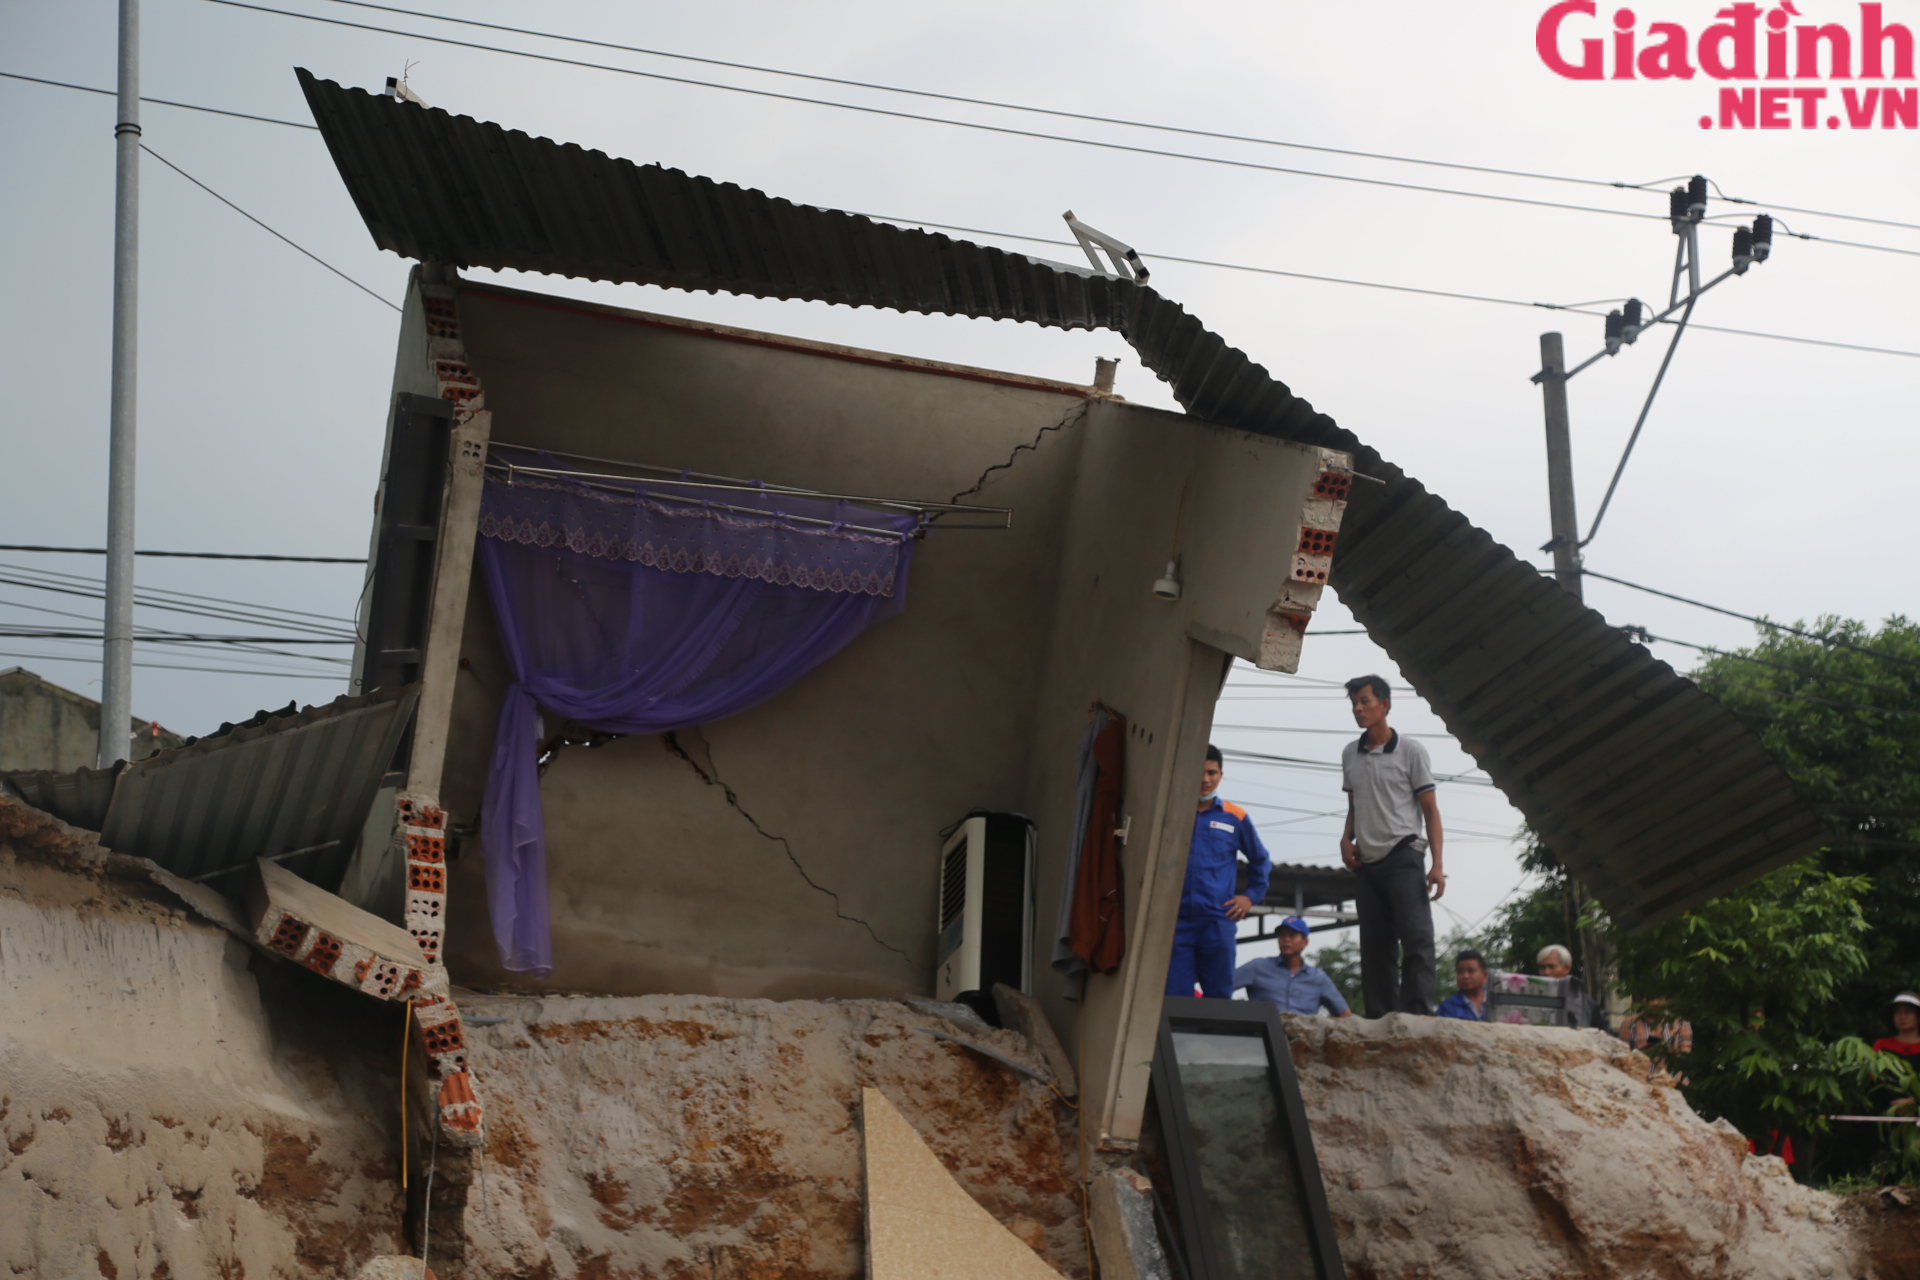 Hiện trường vụ sạt lở kinh hoàng khiến nhiều nhà dân đổ sập, 1 người bị vùi lấp ở Quảng Trị - Ảnh 6.